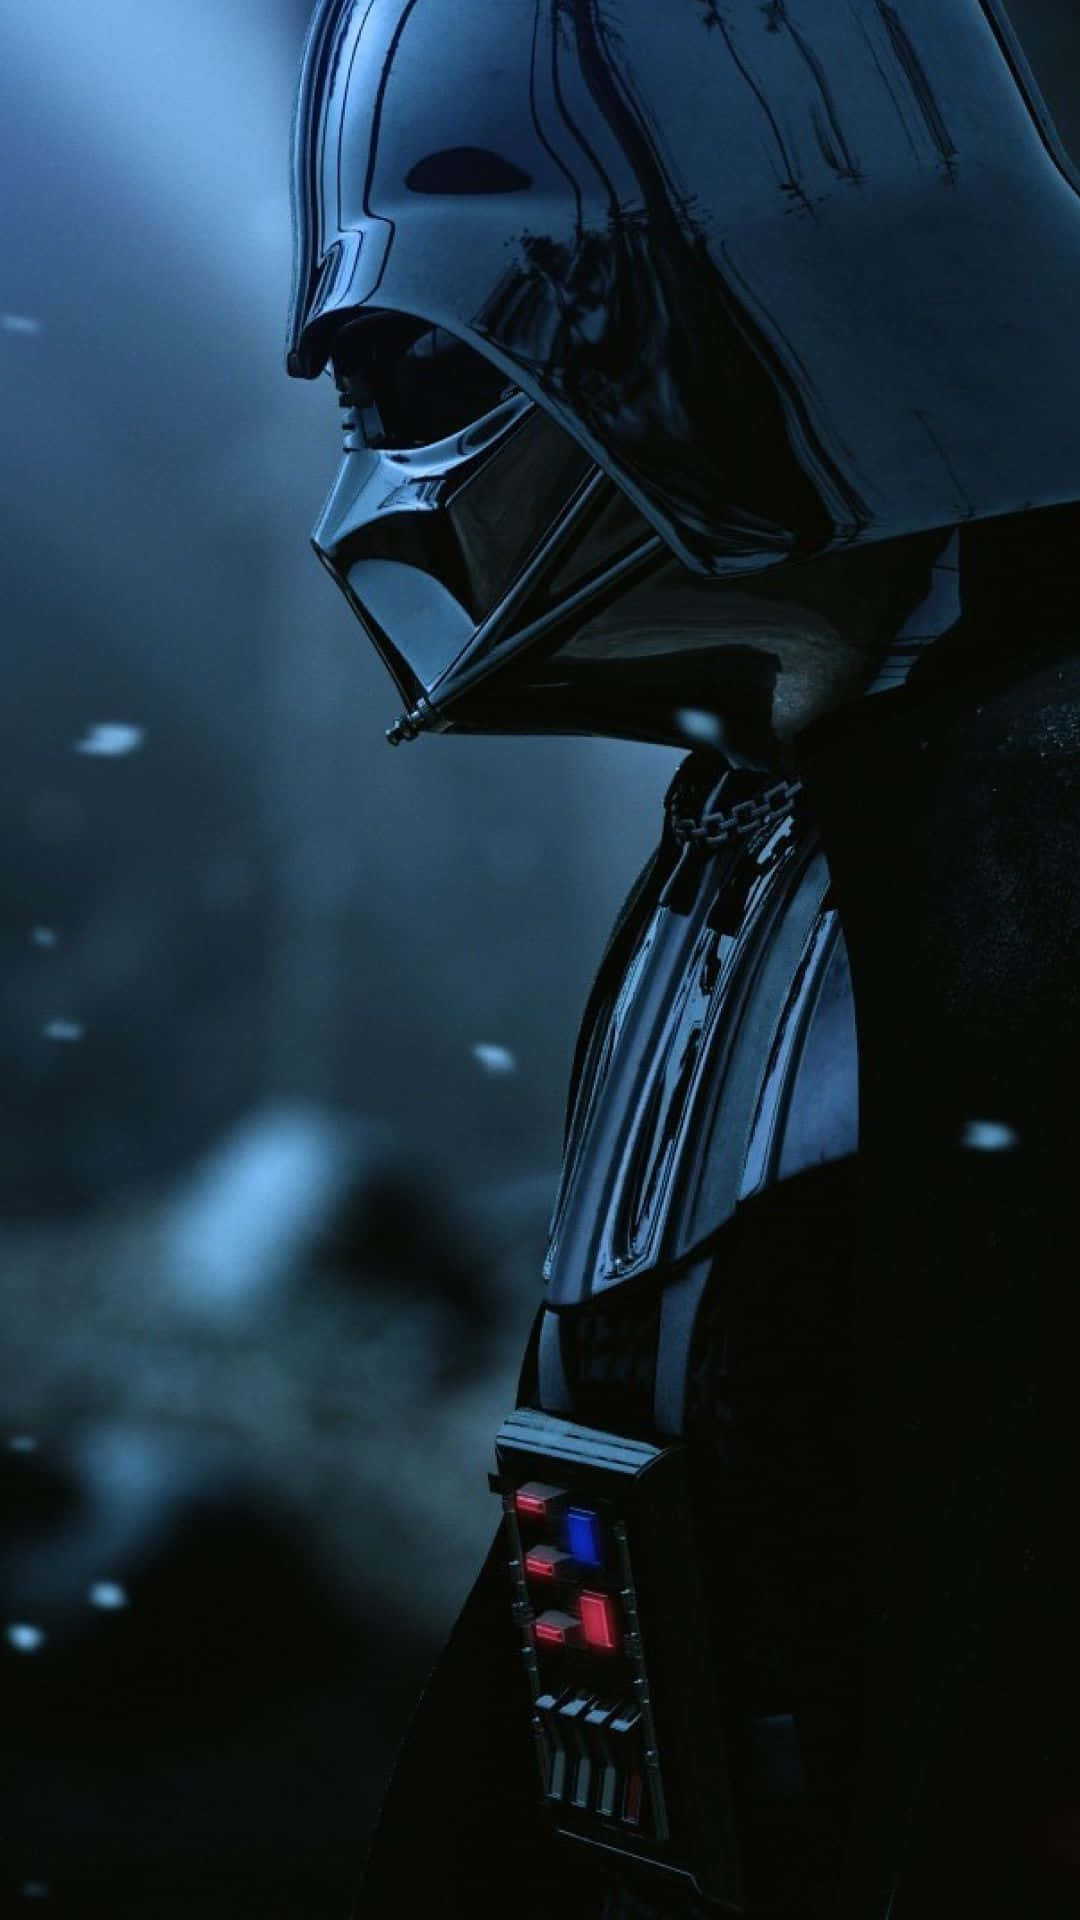 Imágenesde Darth Vader.